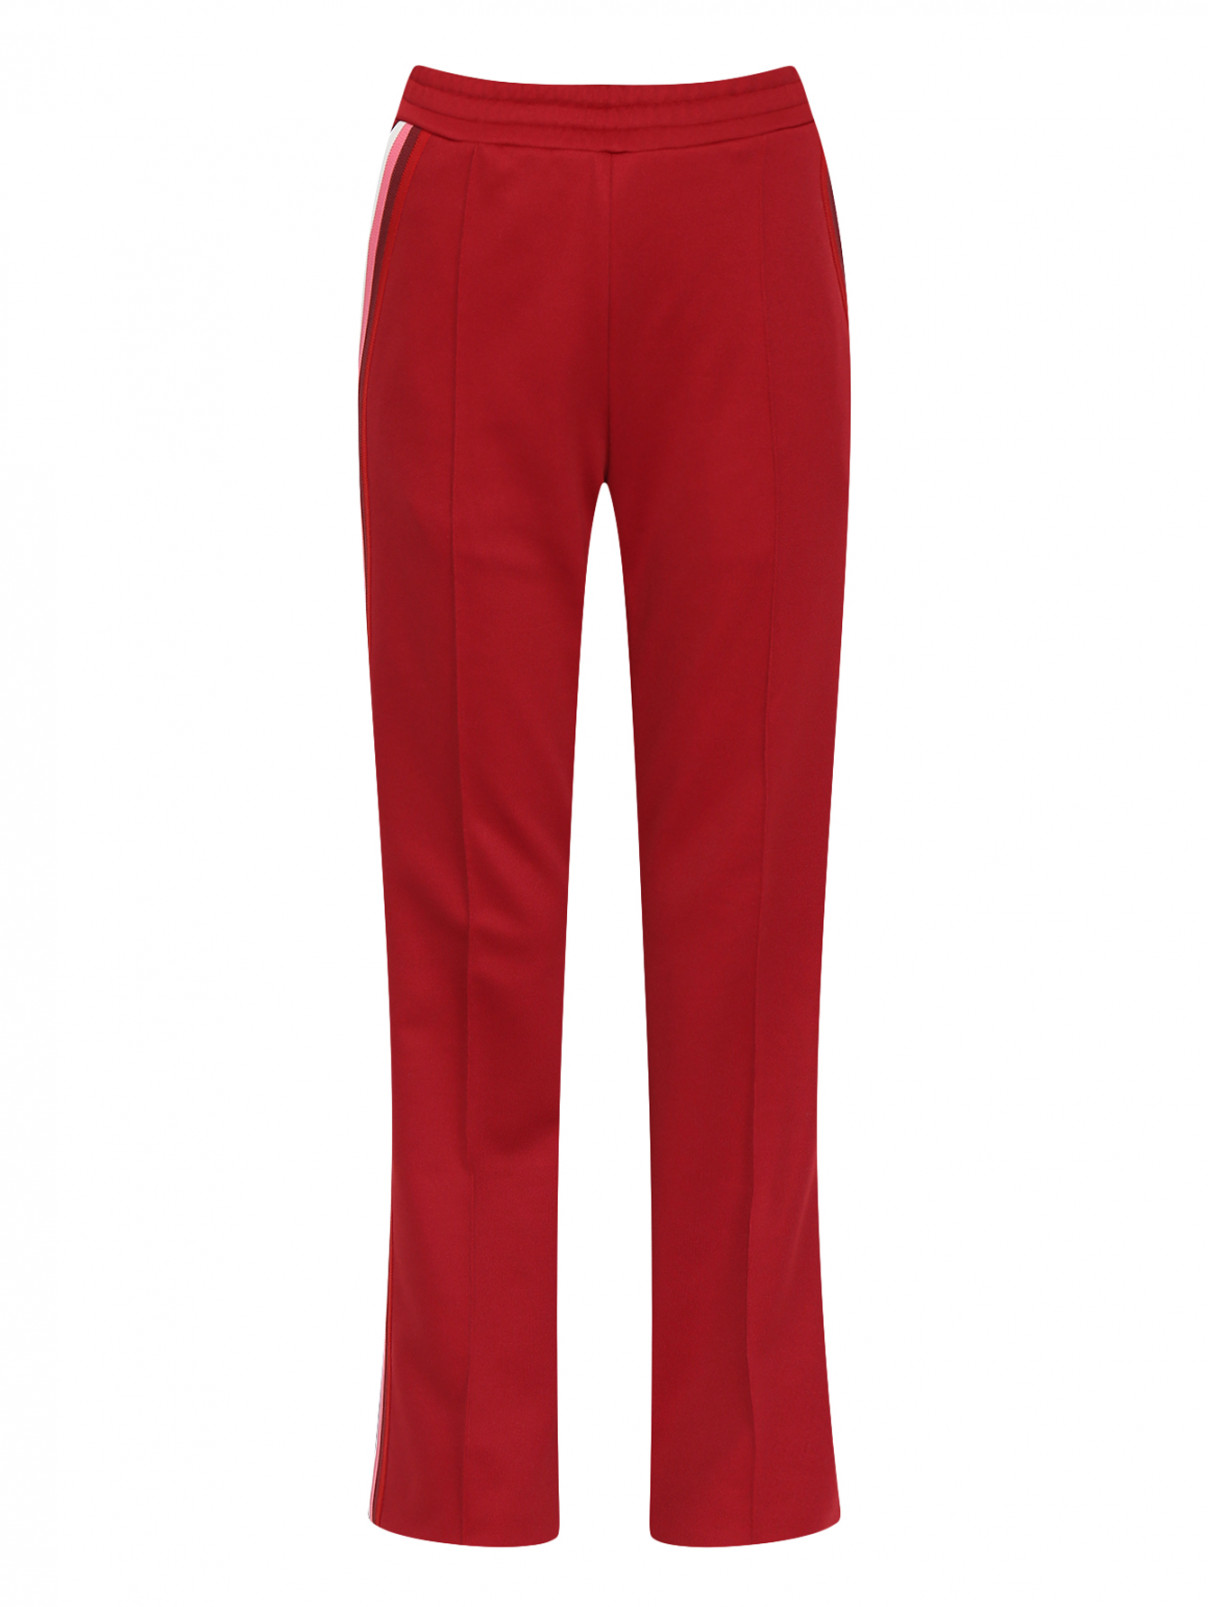 Спортивные брюки на резинке с контрастными лампасами Moncler  –  Общий вид  – Цвет:  Красный